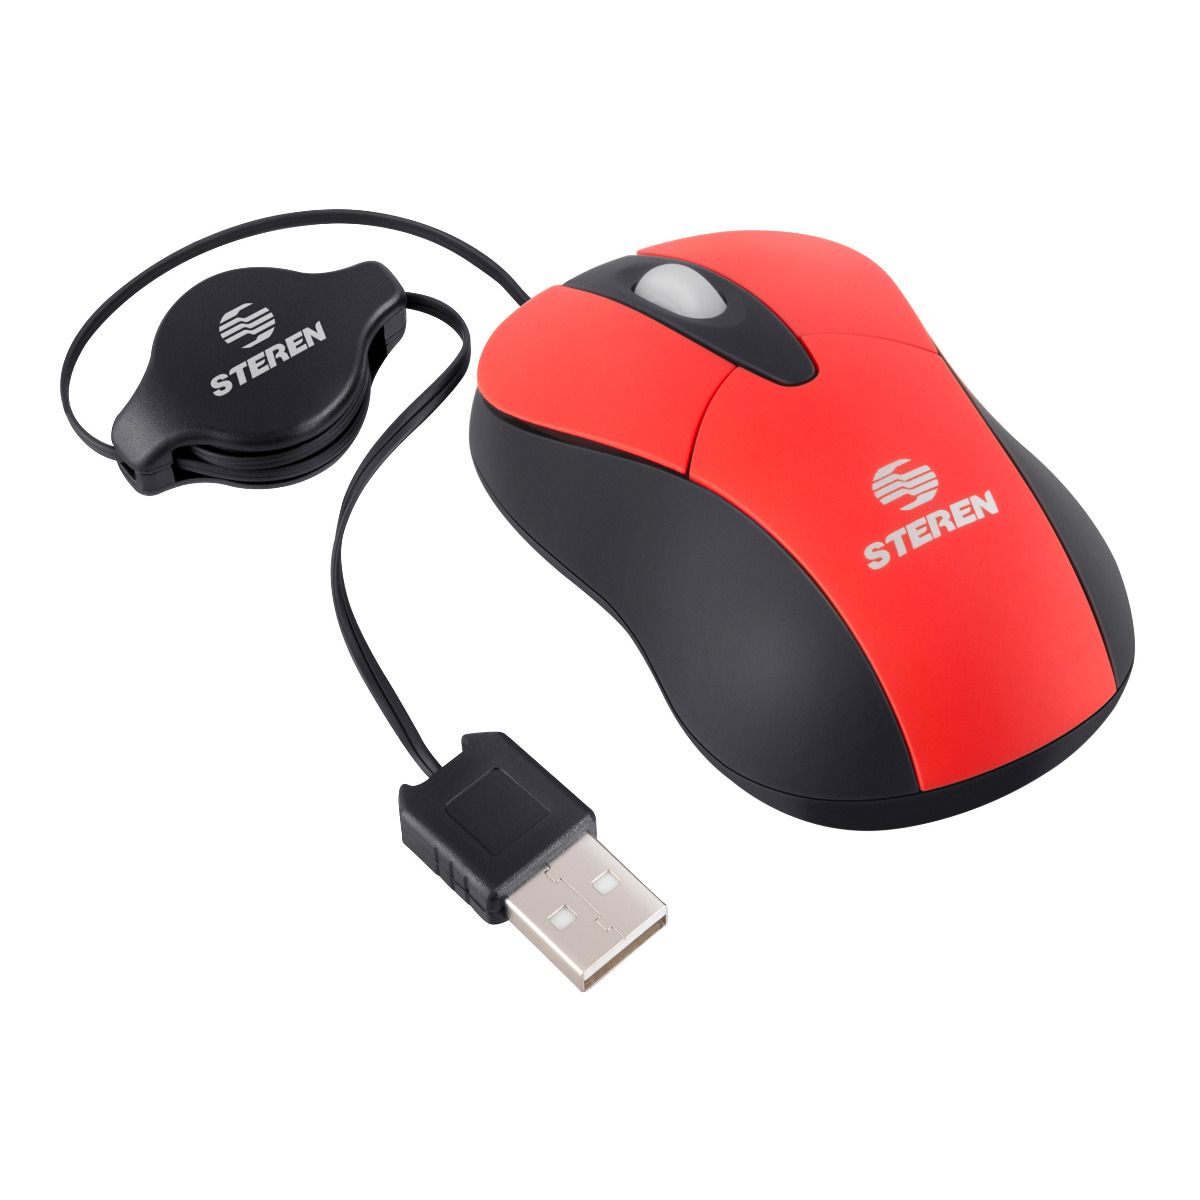 Mini Ratón / Mouse con Cable USB Retráctil Multi4you - Ratón - Los